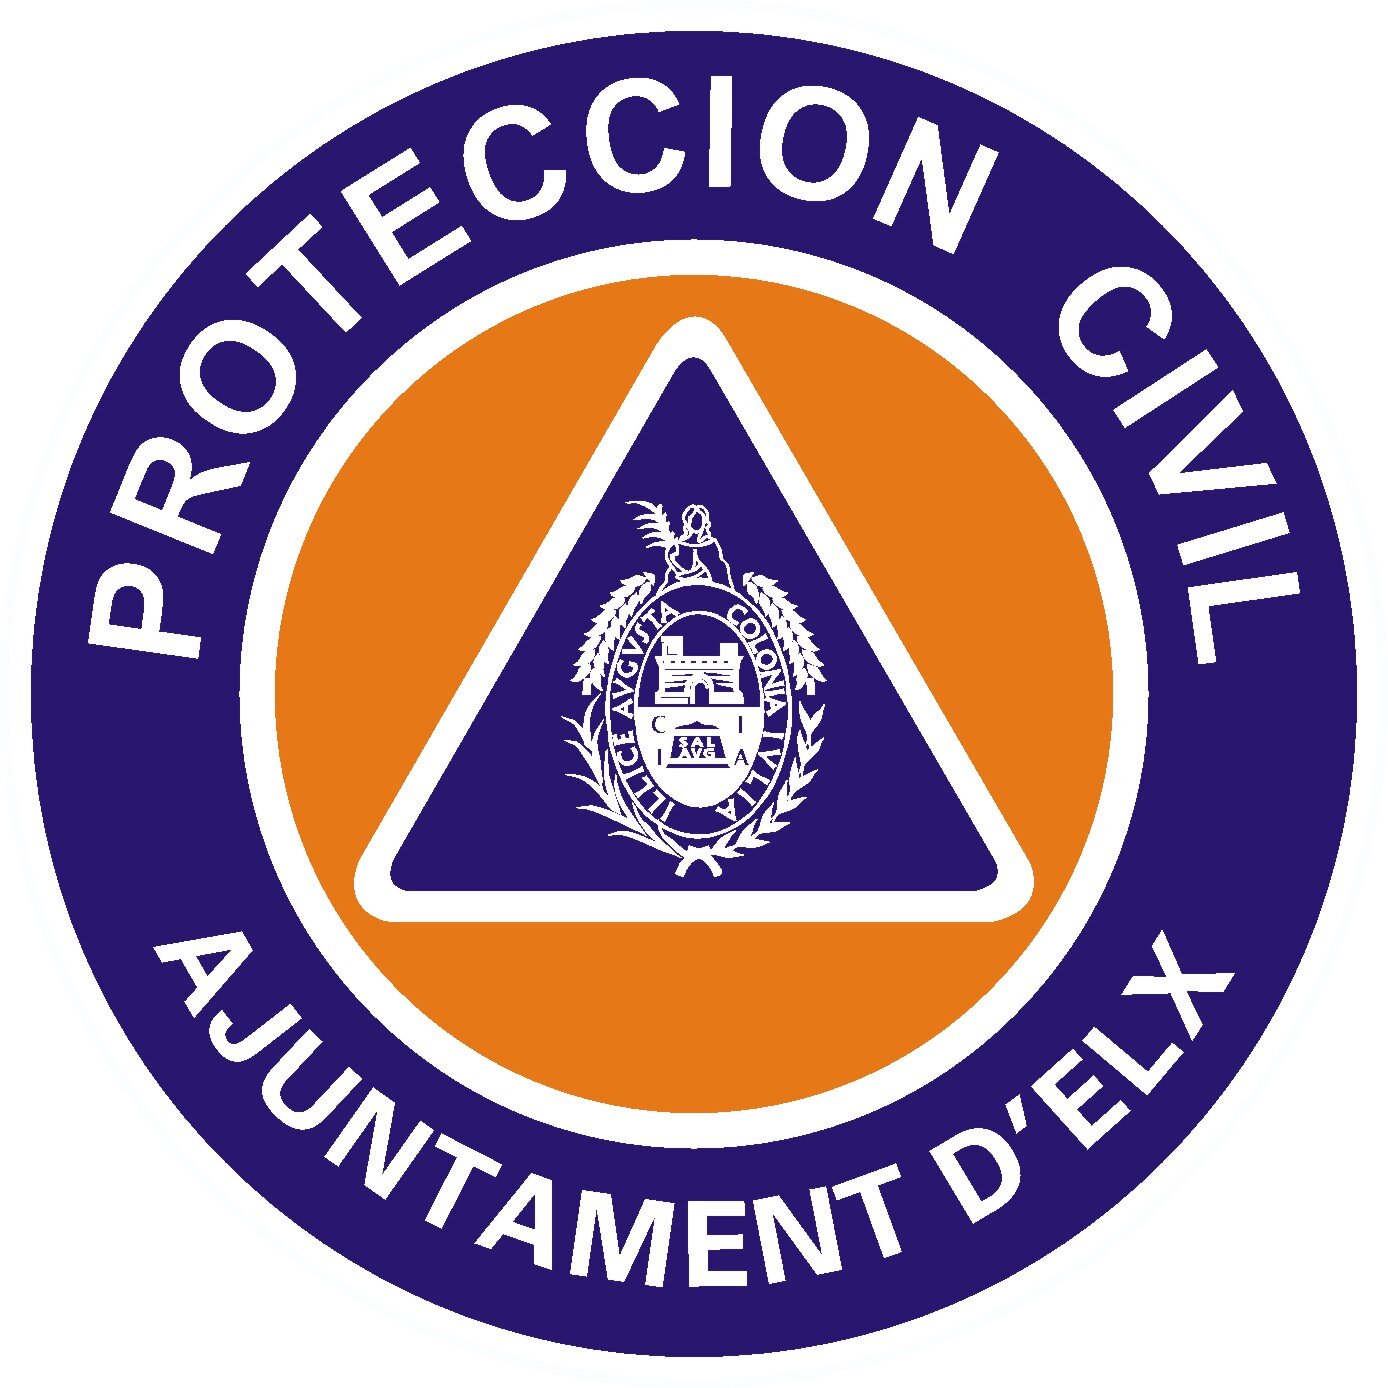 Cuenta NO OFICIAL de la Agrupación Local de Voluntarios de Protección Civil de Elche. RT no implica compartir opinión